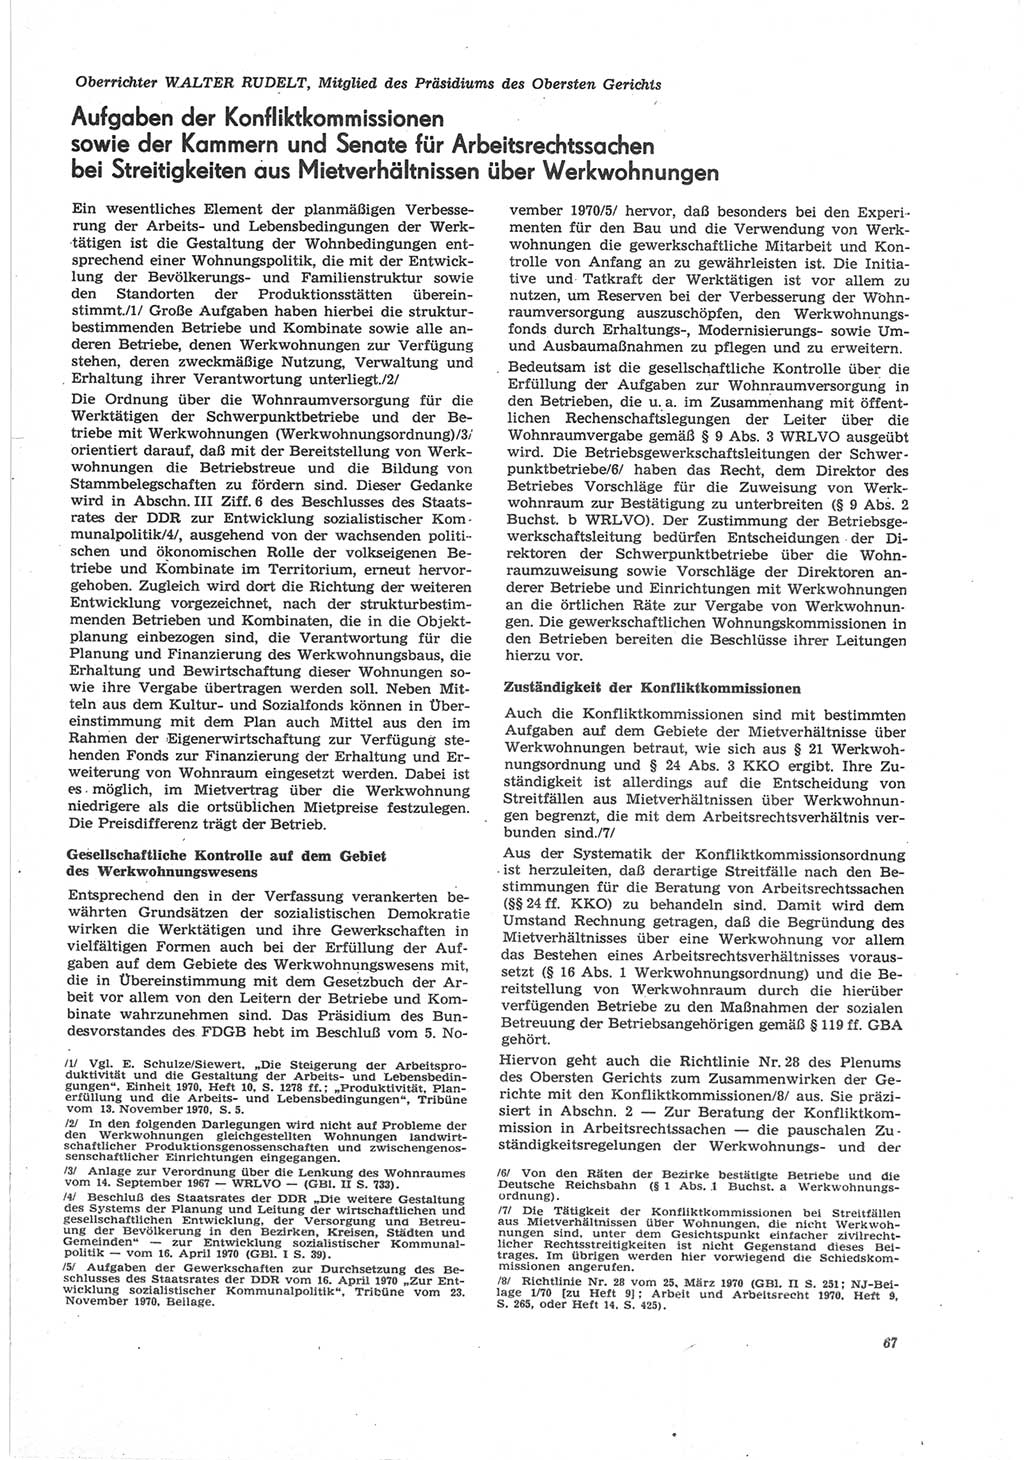 Neue Justiz (NJ), Zeitschrift für Recht und Rechtswissenschaft [Deutsche Demokratische Republik (DDR)], 25. Jahrgang 1971, Seite 67 (NJ DDR 1971, S. 67)